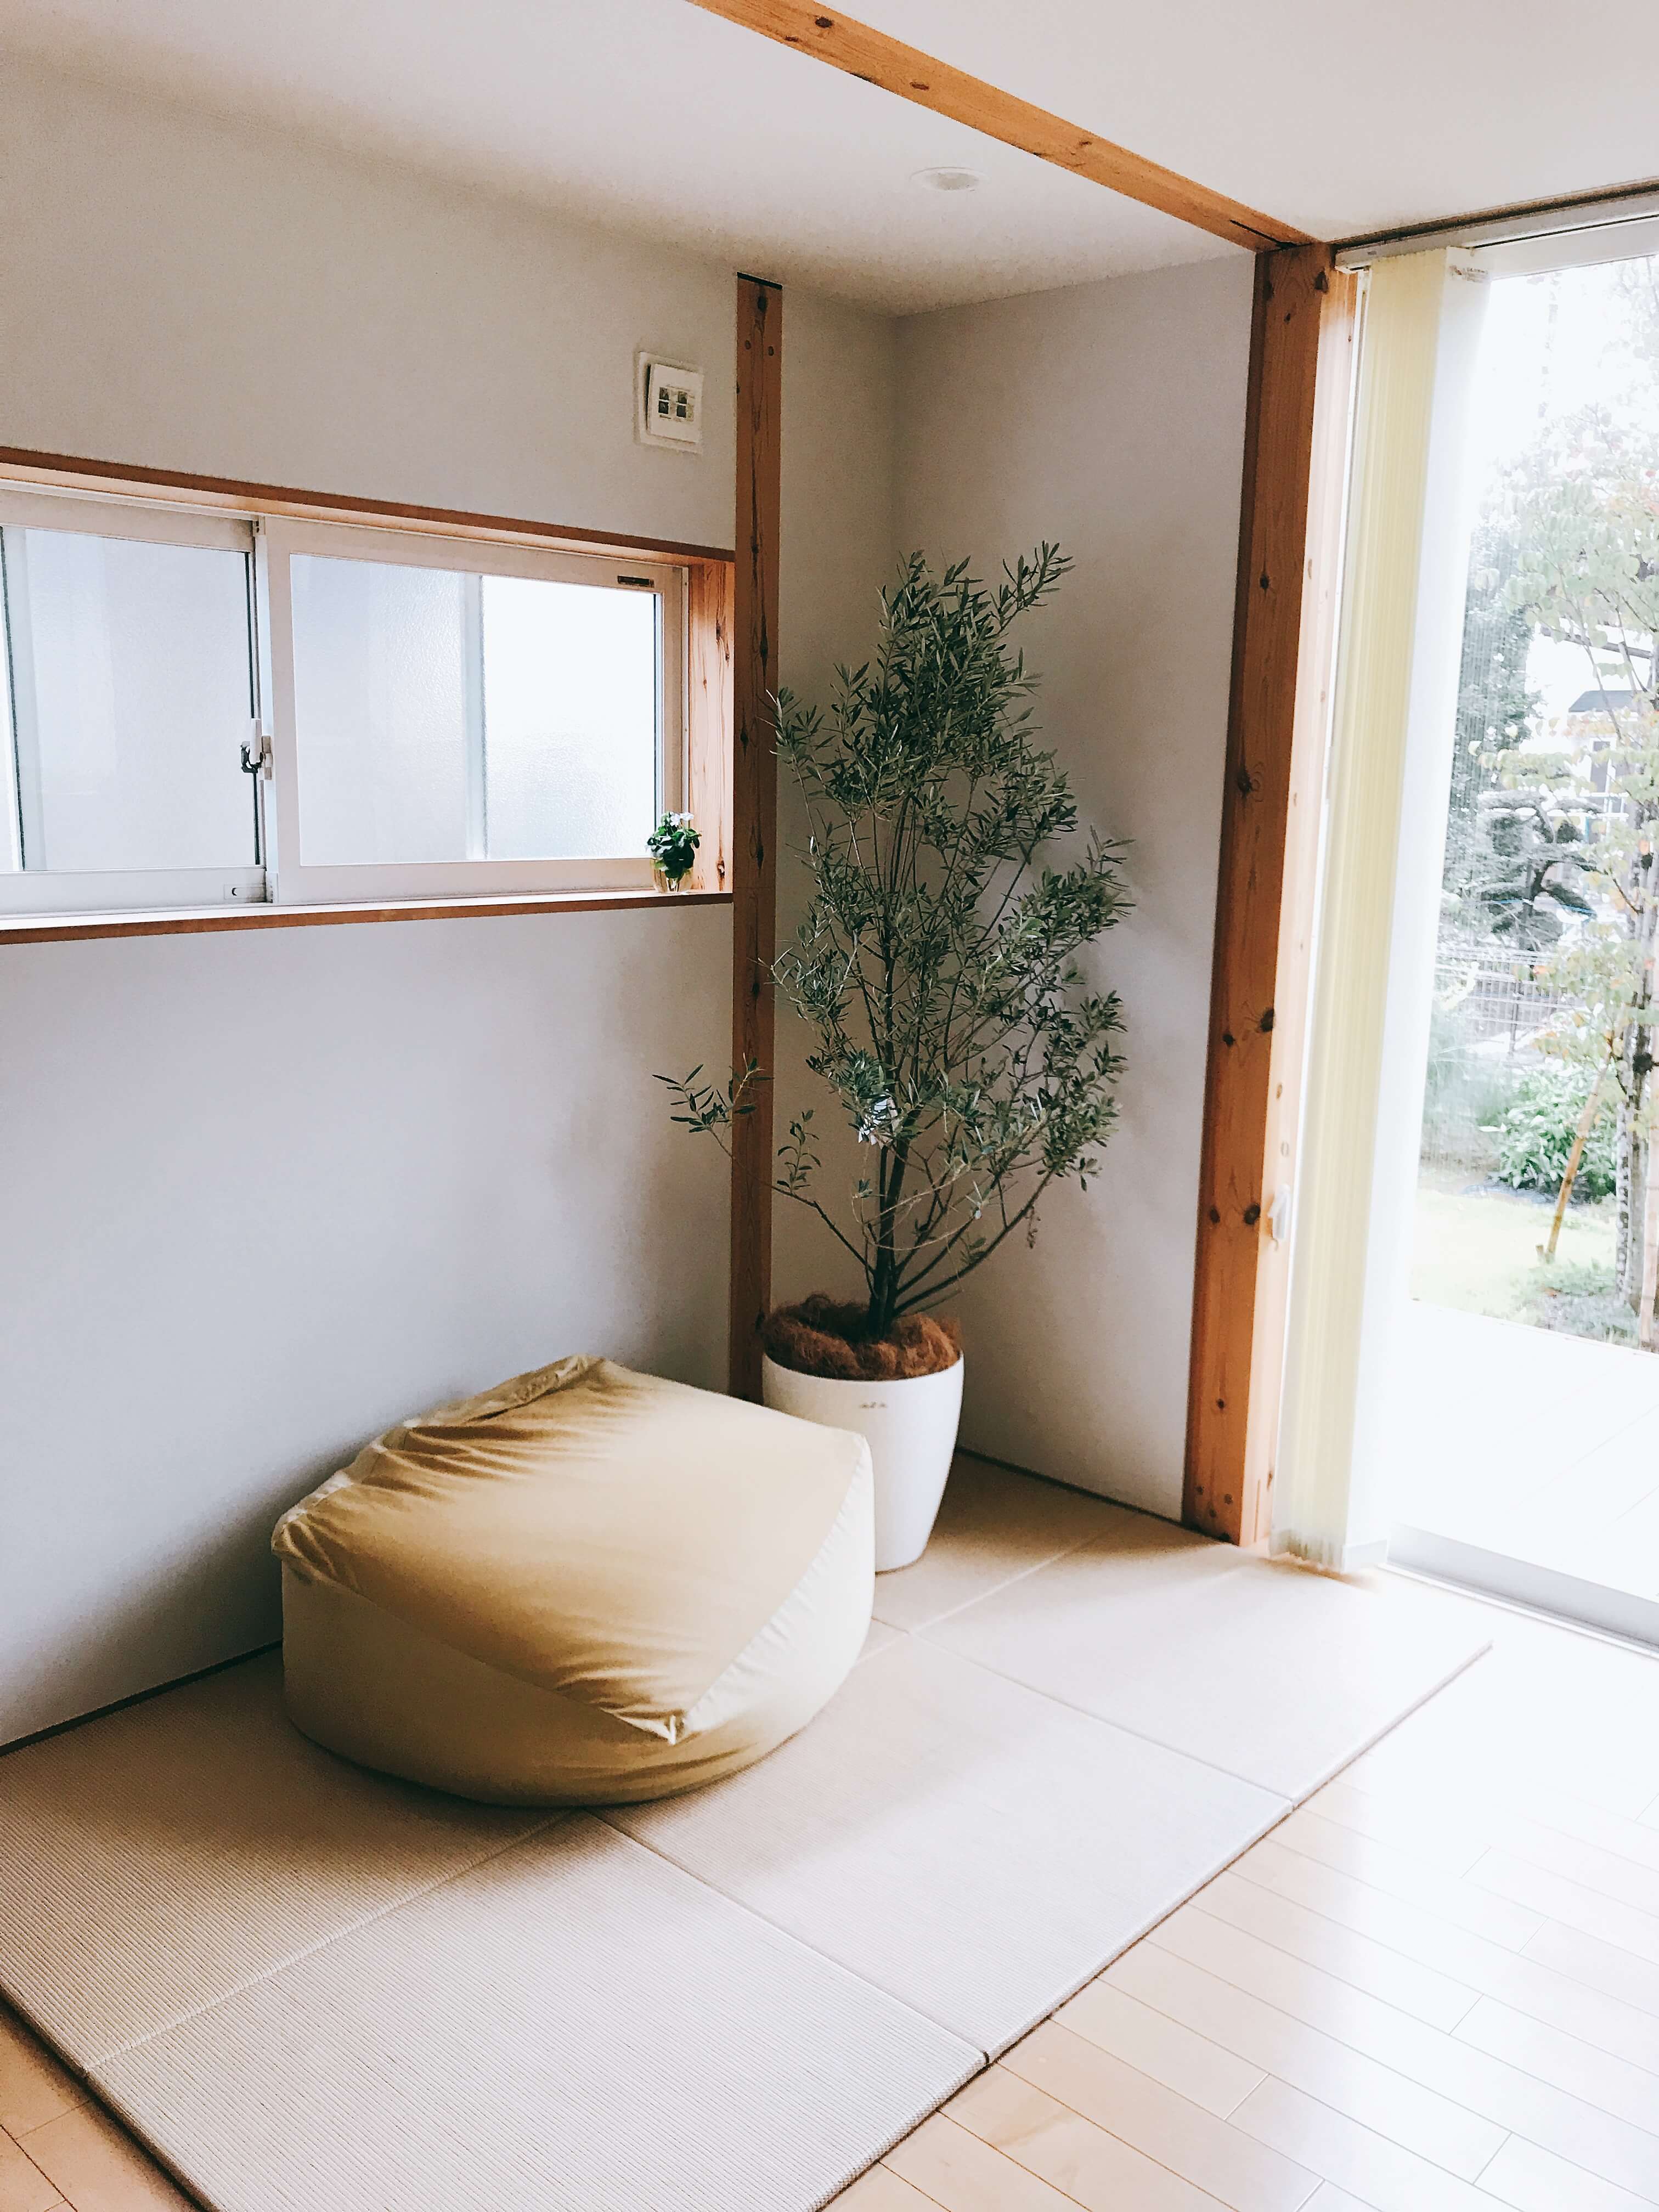 無印良品の麻畳マットでフローリングのリビングに和室を作りました 無印良品の家のブログ Annyの木の家